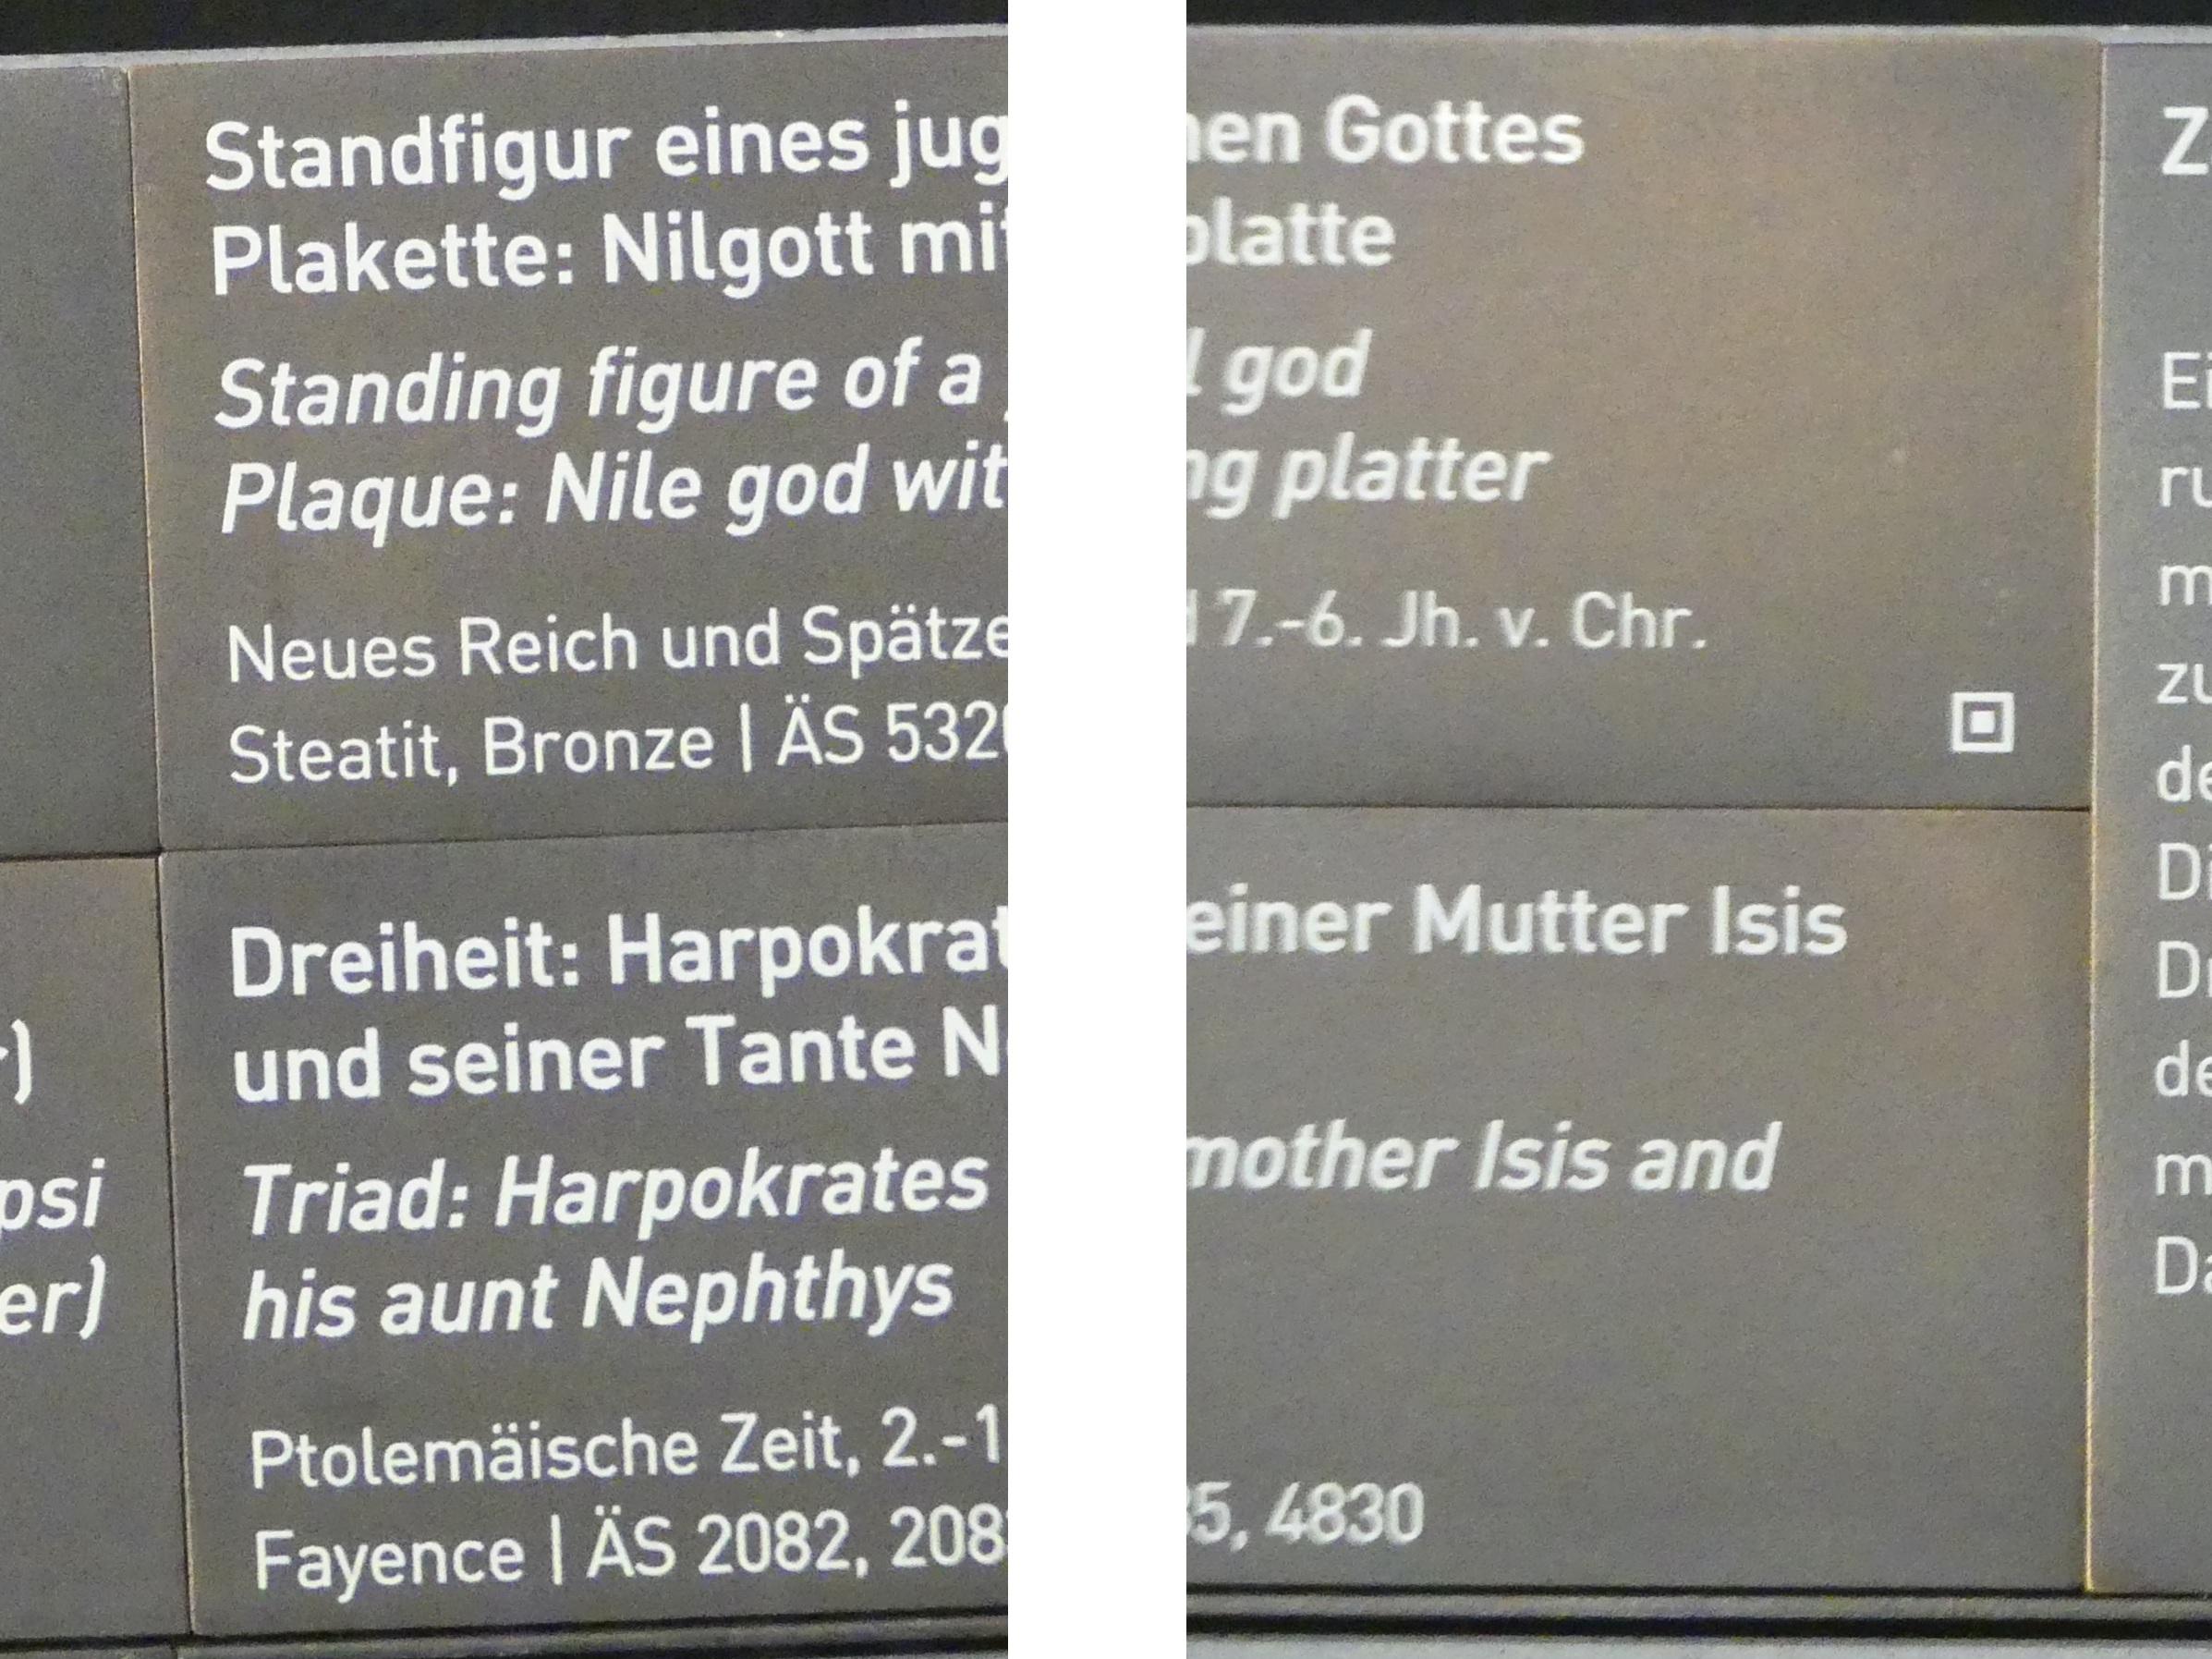 Dreiheit: Harpokrates mit seiner Mutter Isis und seiner Tante Nephthys, Ptolemäische Zeit, 400 v. Chr. - 1 n. Chr., 200 - 1 v. Chr., Bild 2/2